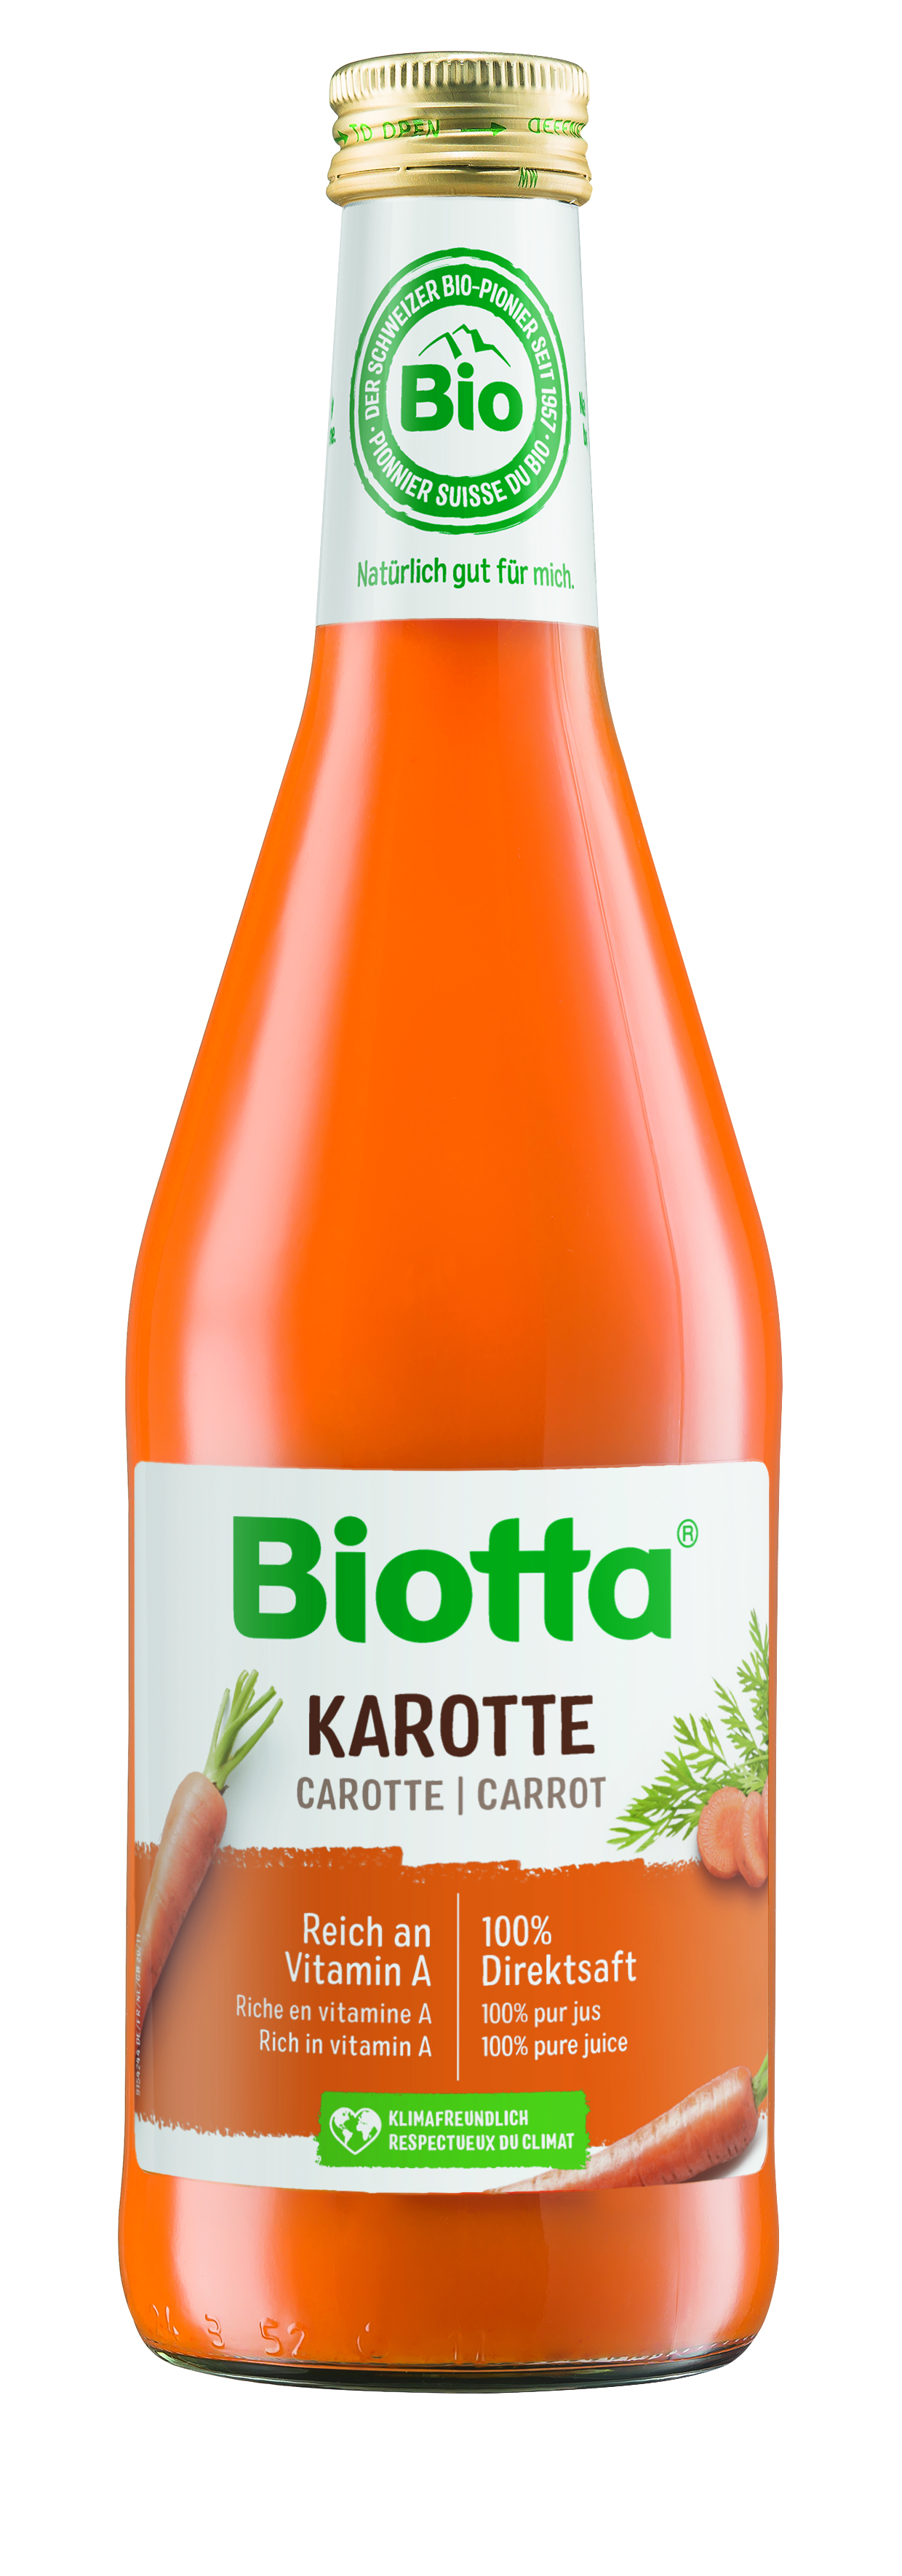 Biotta mrkvová šťava 1 kartón - cena za 1 ks 4,166€ s DPH